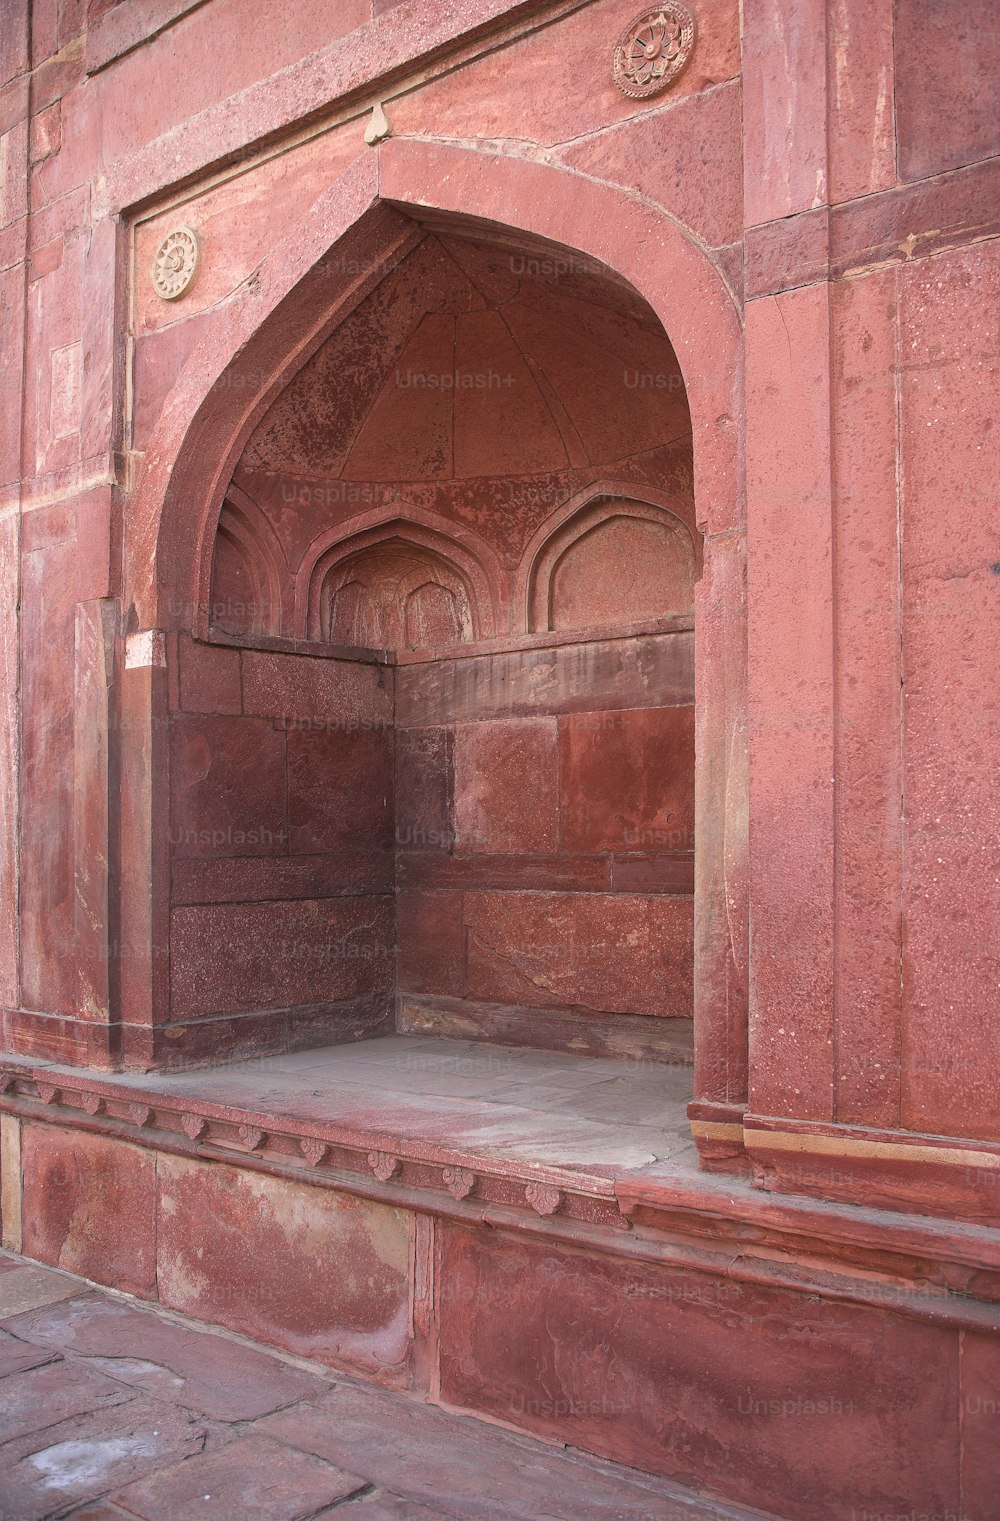 Una foto de un antiguo edificio musulmán en la India